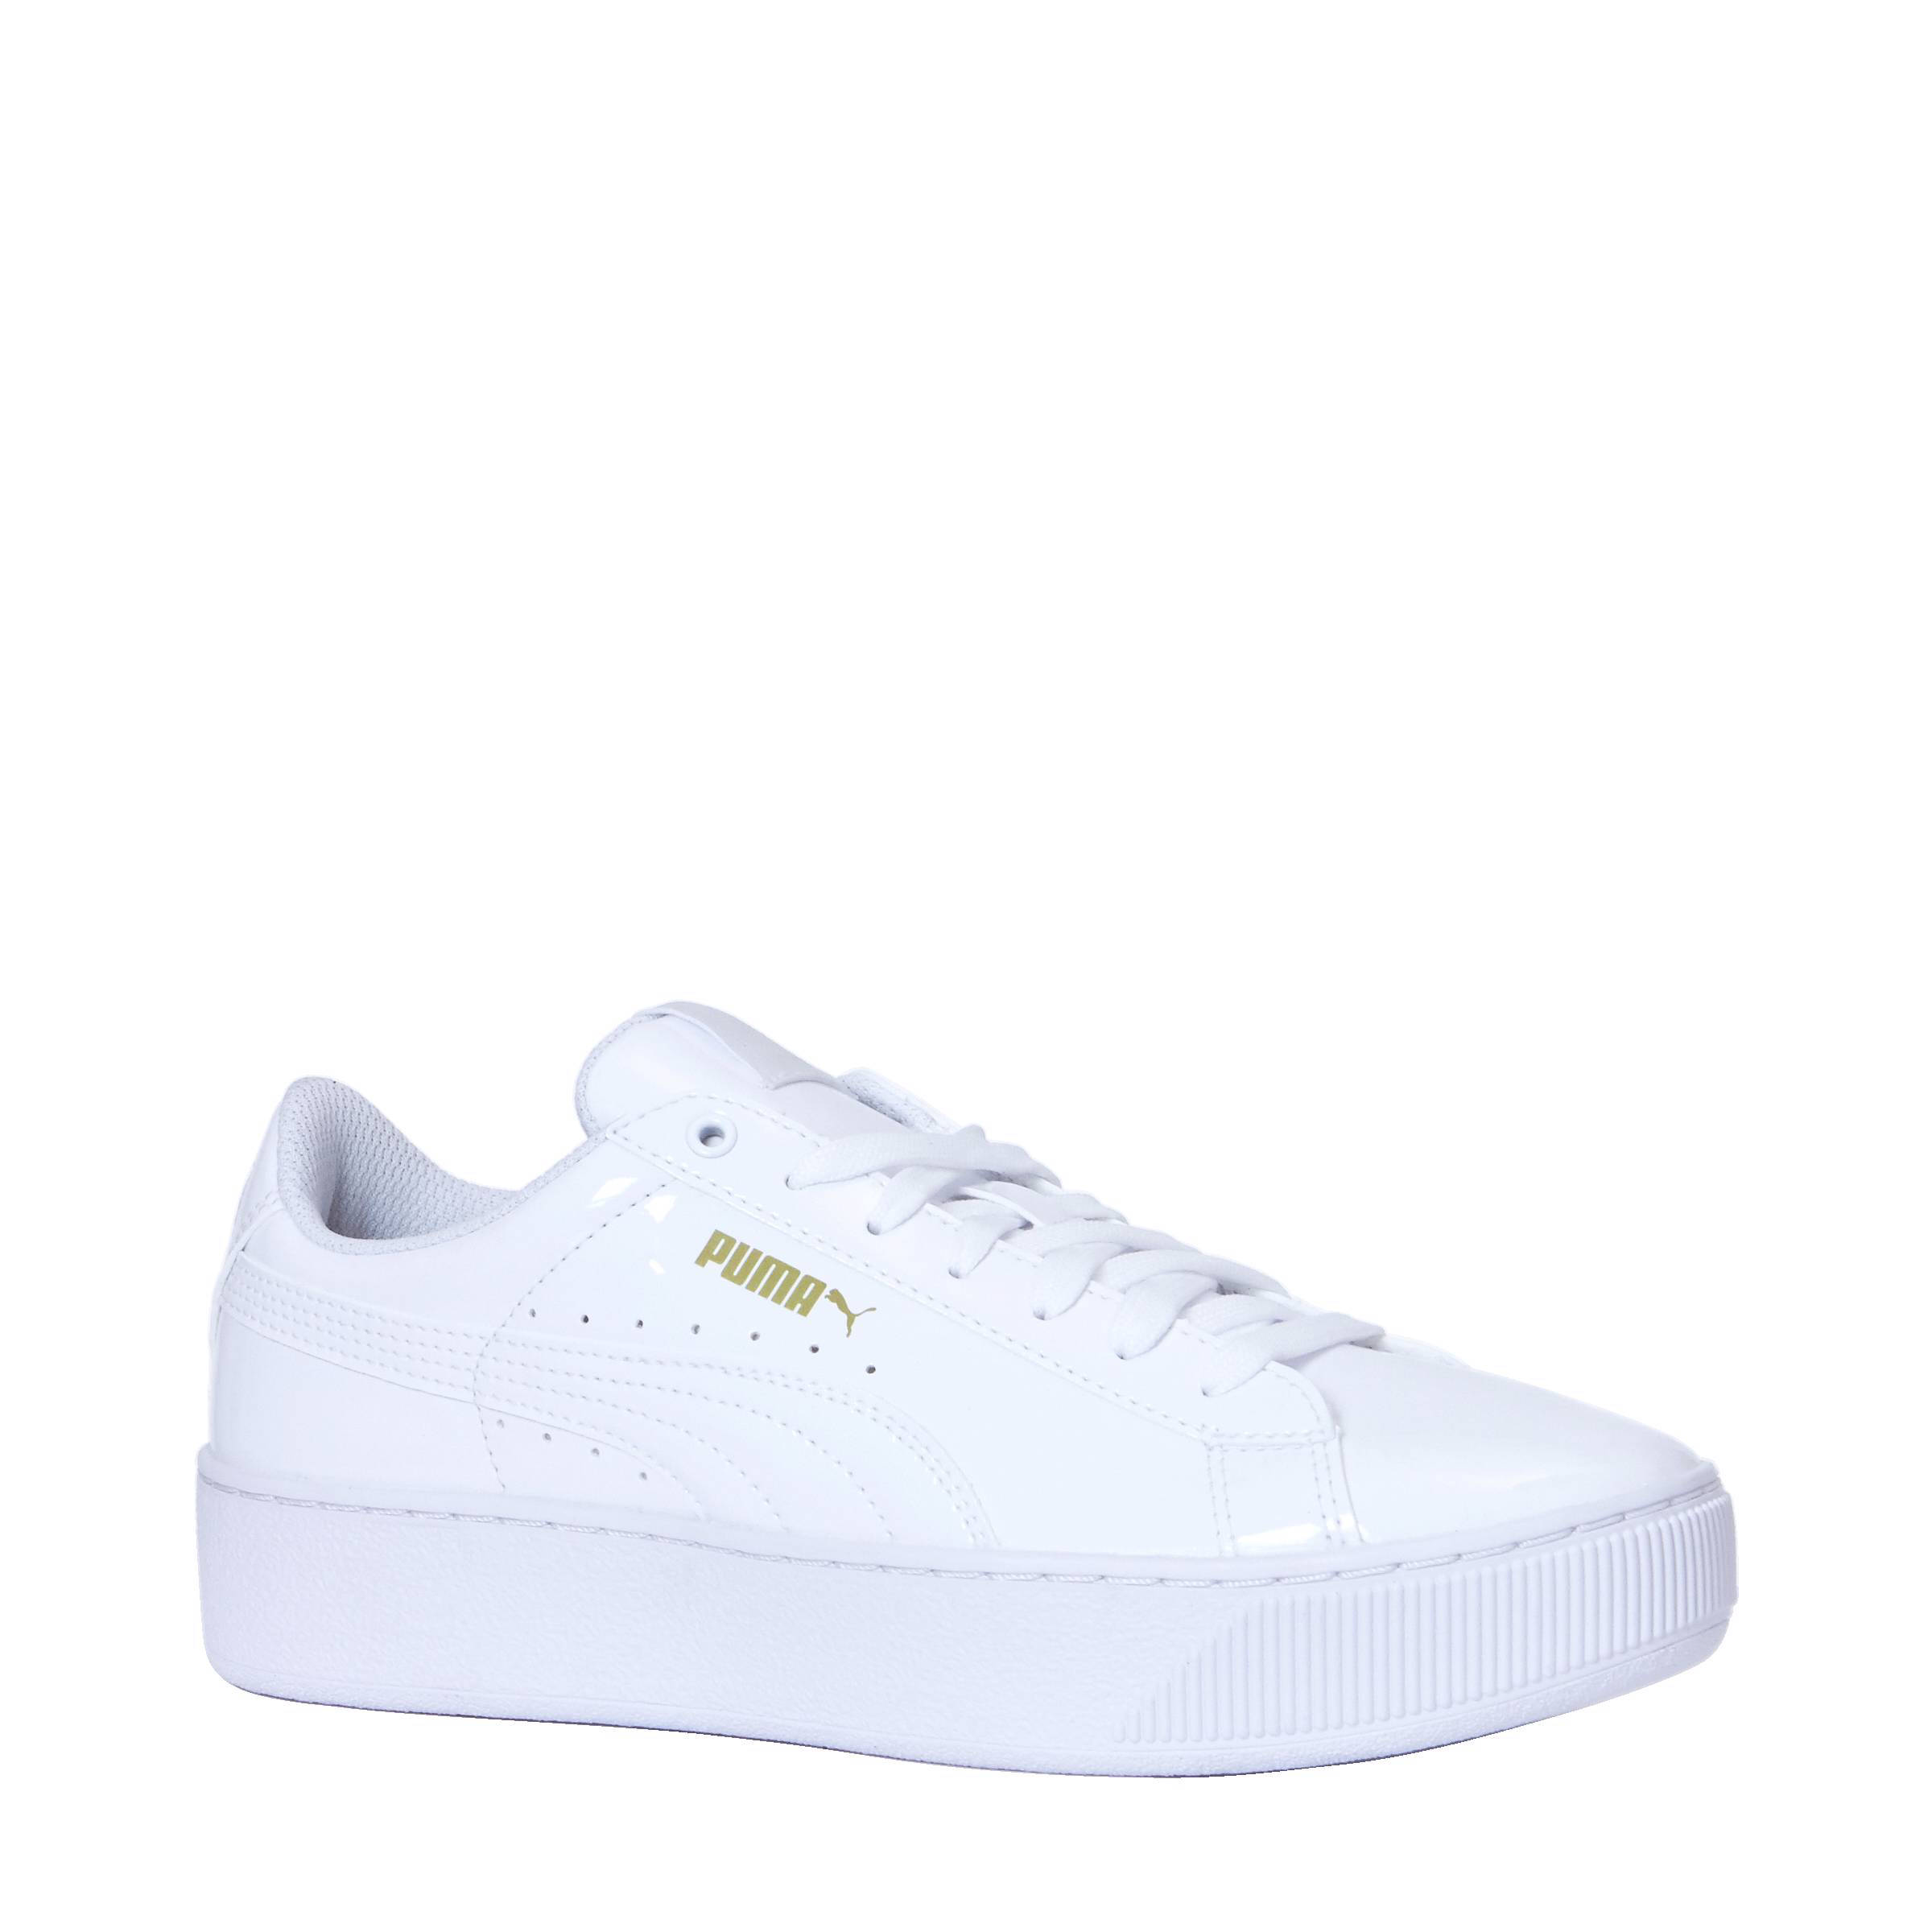 puma vikky platform sneaker white